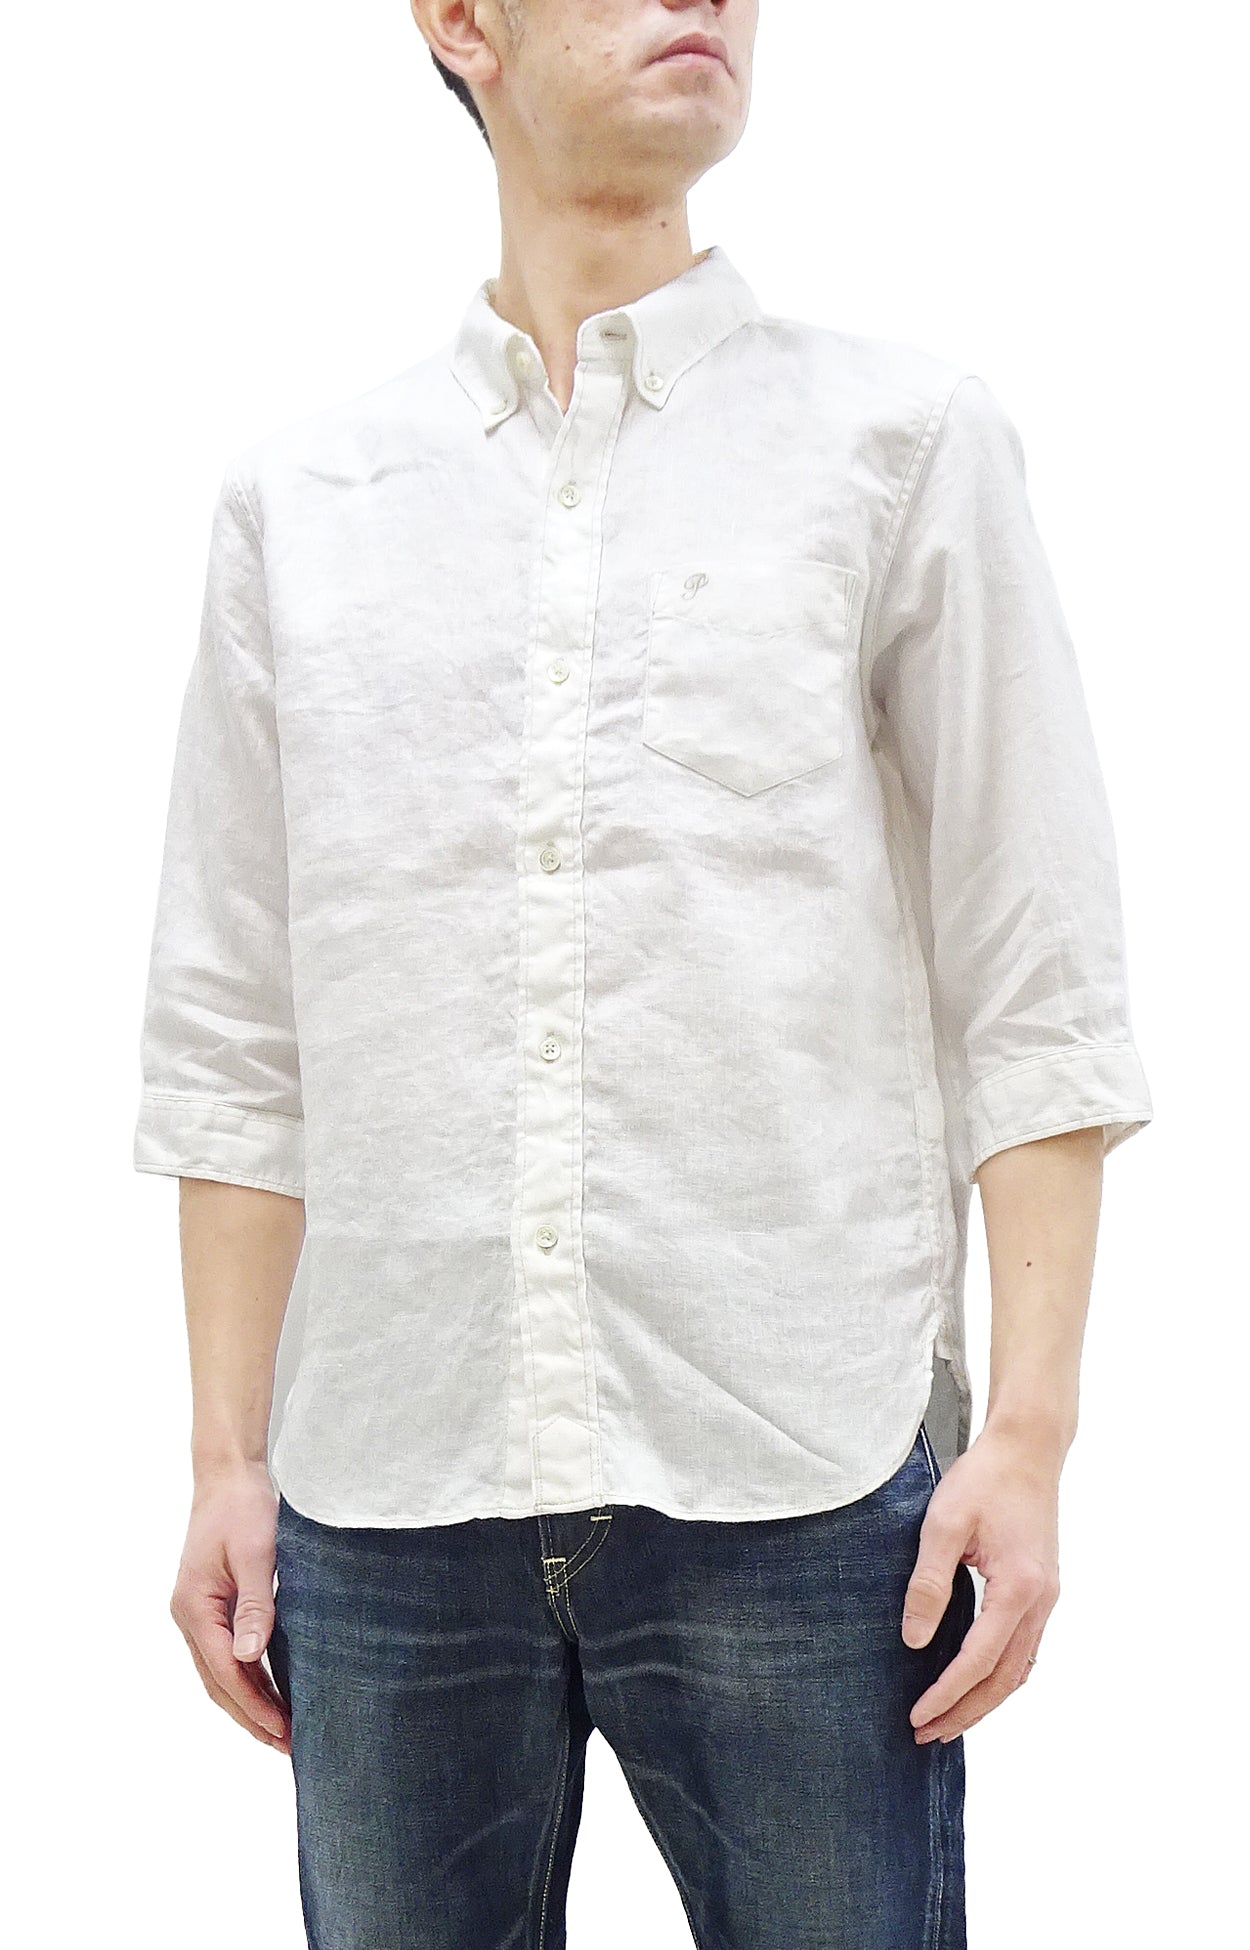 Pherrow's Linen 3/4 Sleeve Shirt Men's Casual Plain Button Up